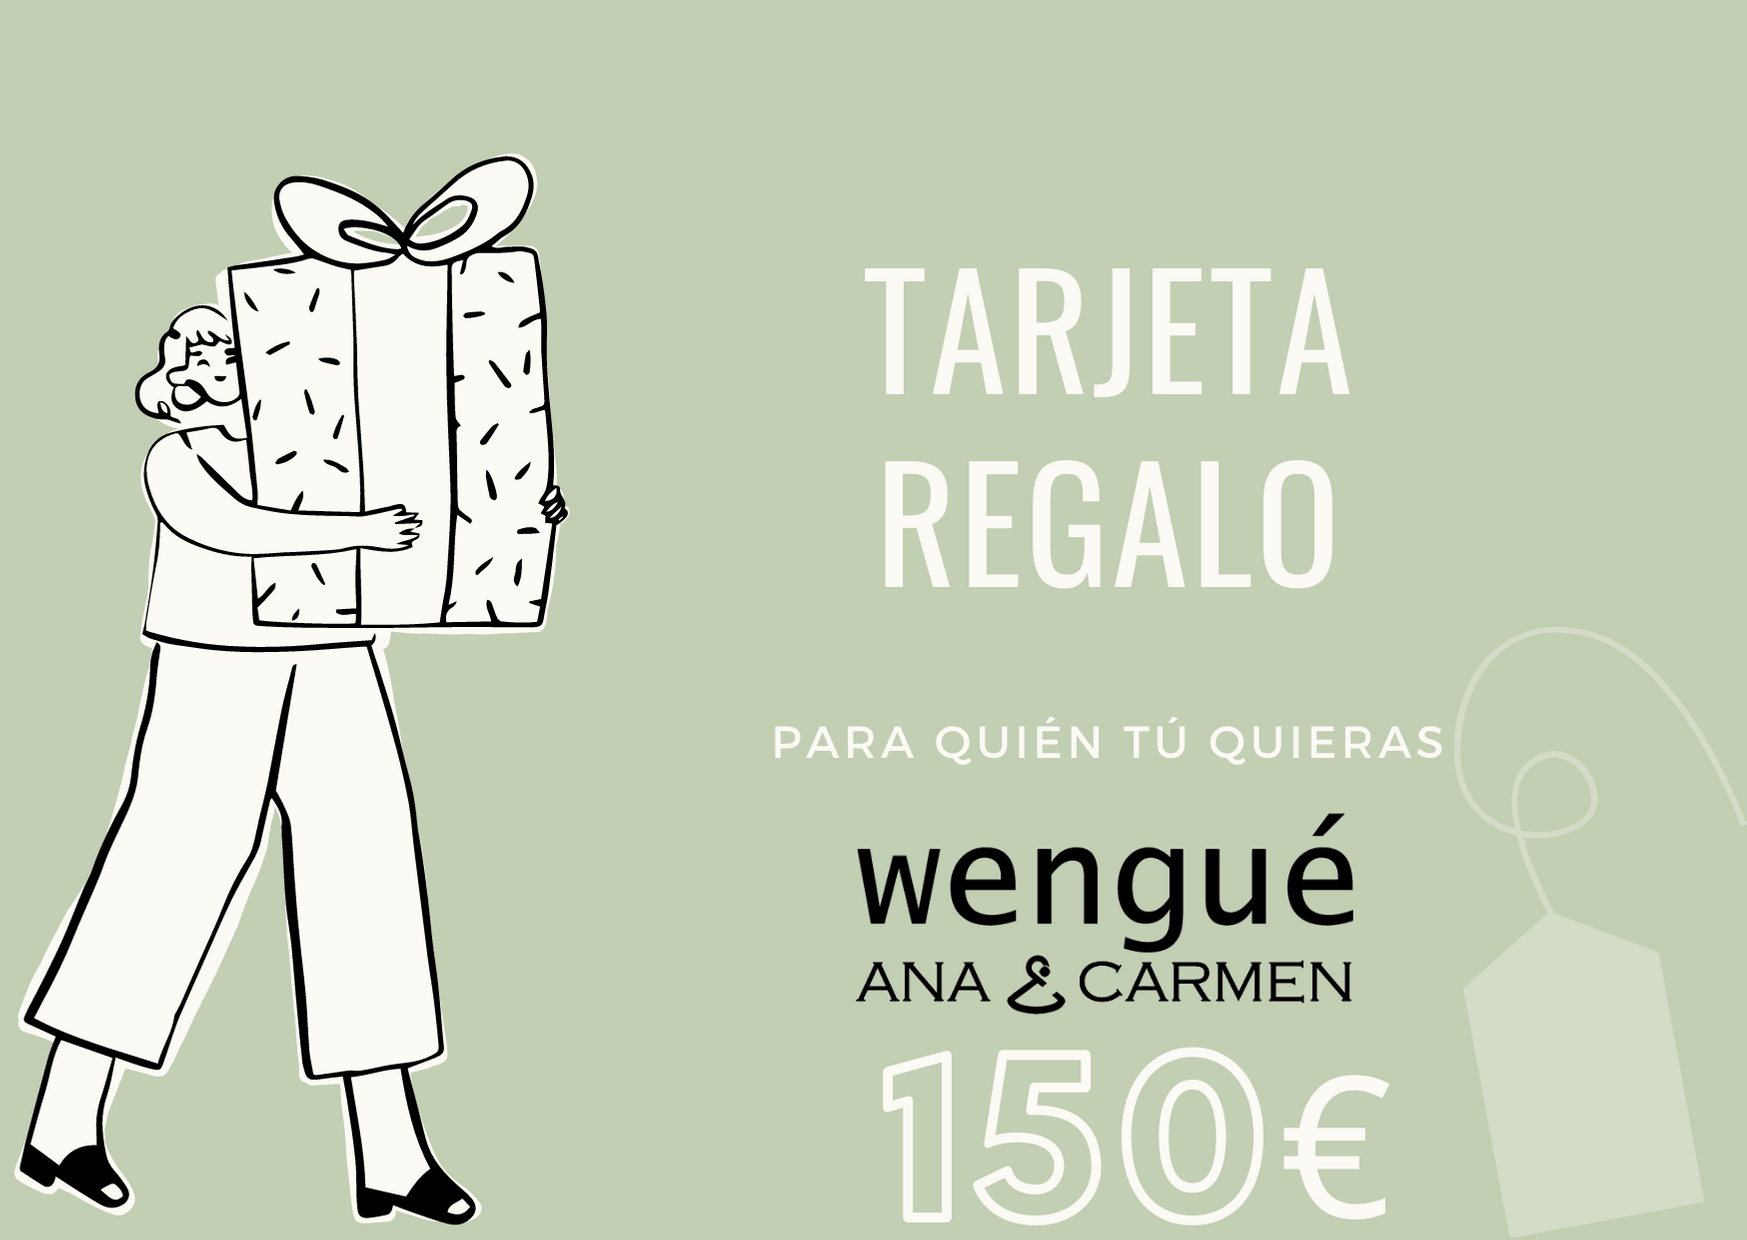 Tarjeta de regalo Wengué Ana y Carmen - Wengué Ana y Carmen - Tarjeta de regalo - Wengué Ana y Carmen 